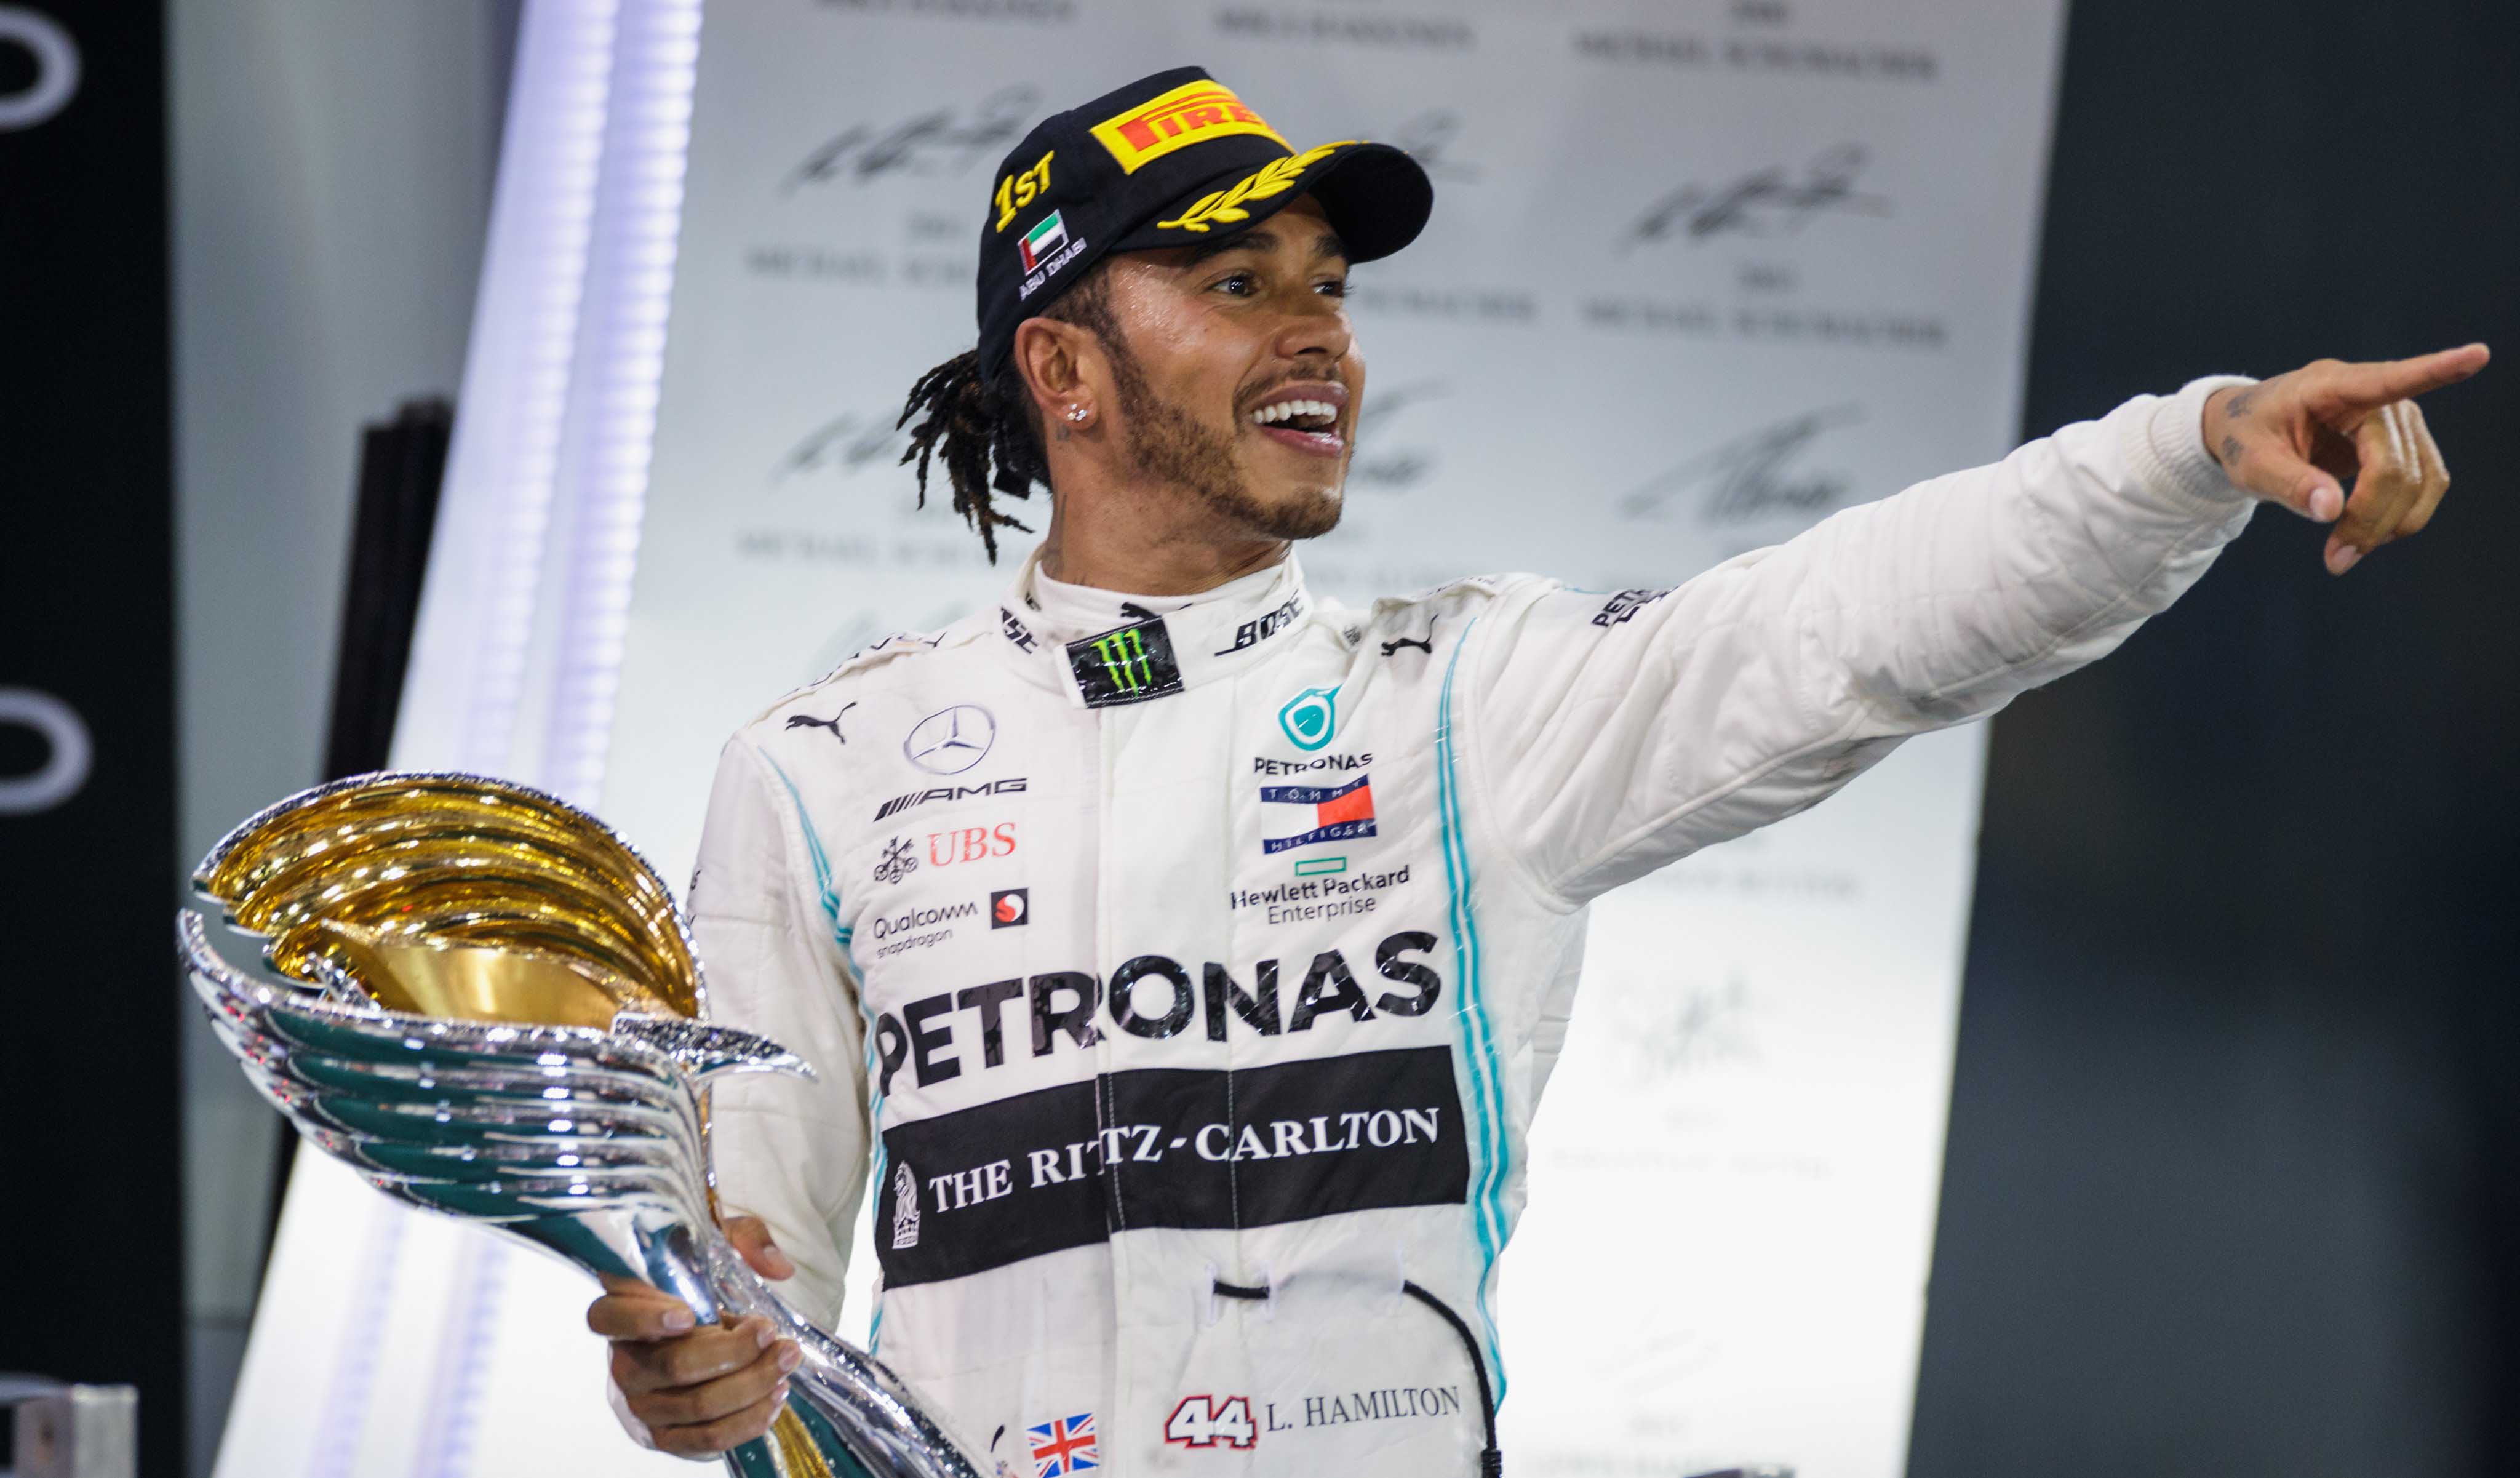 Lewis Hamilton dikabarkan akan bergabung dengan Ferrari setelah kontraknya bersama Mercedes berakhir di akhir musim 2020. (Foto: Twitter/@